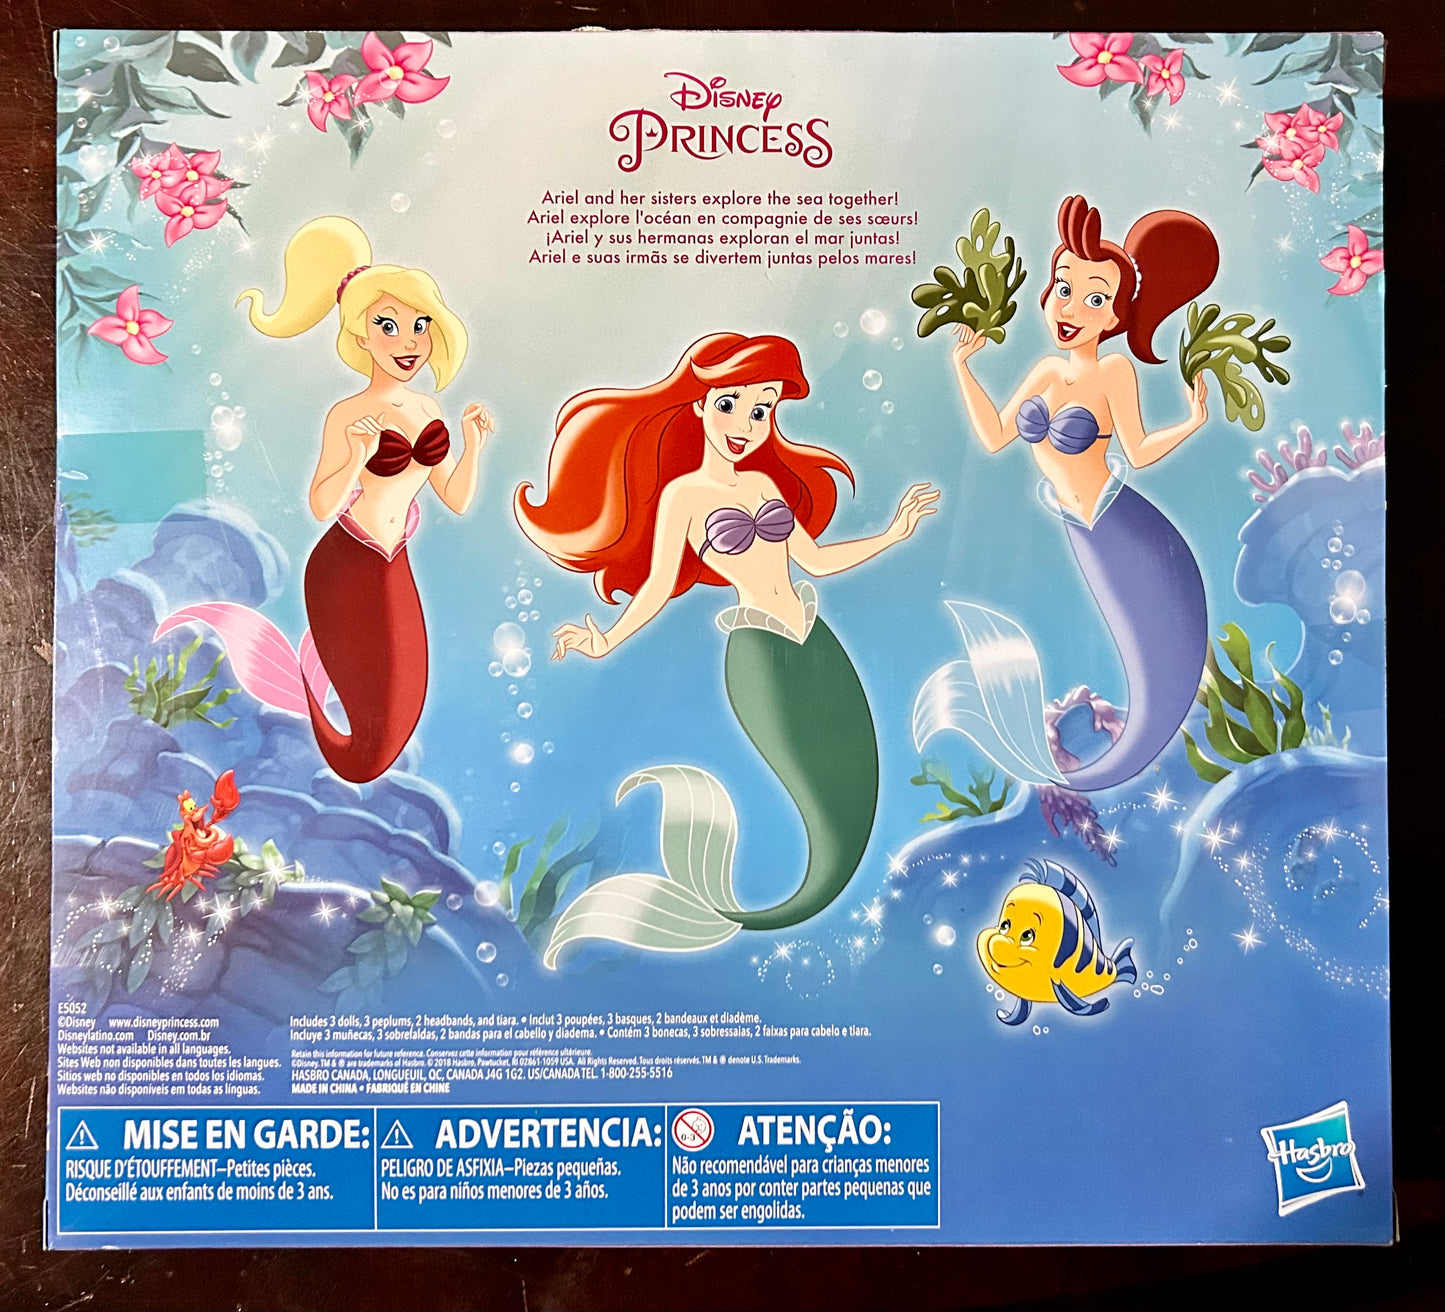 Disney Princess Little Mermaid Ariel & Sisters 3-Pack Doll Set 84397